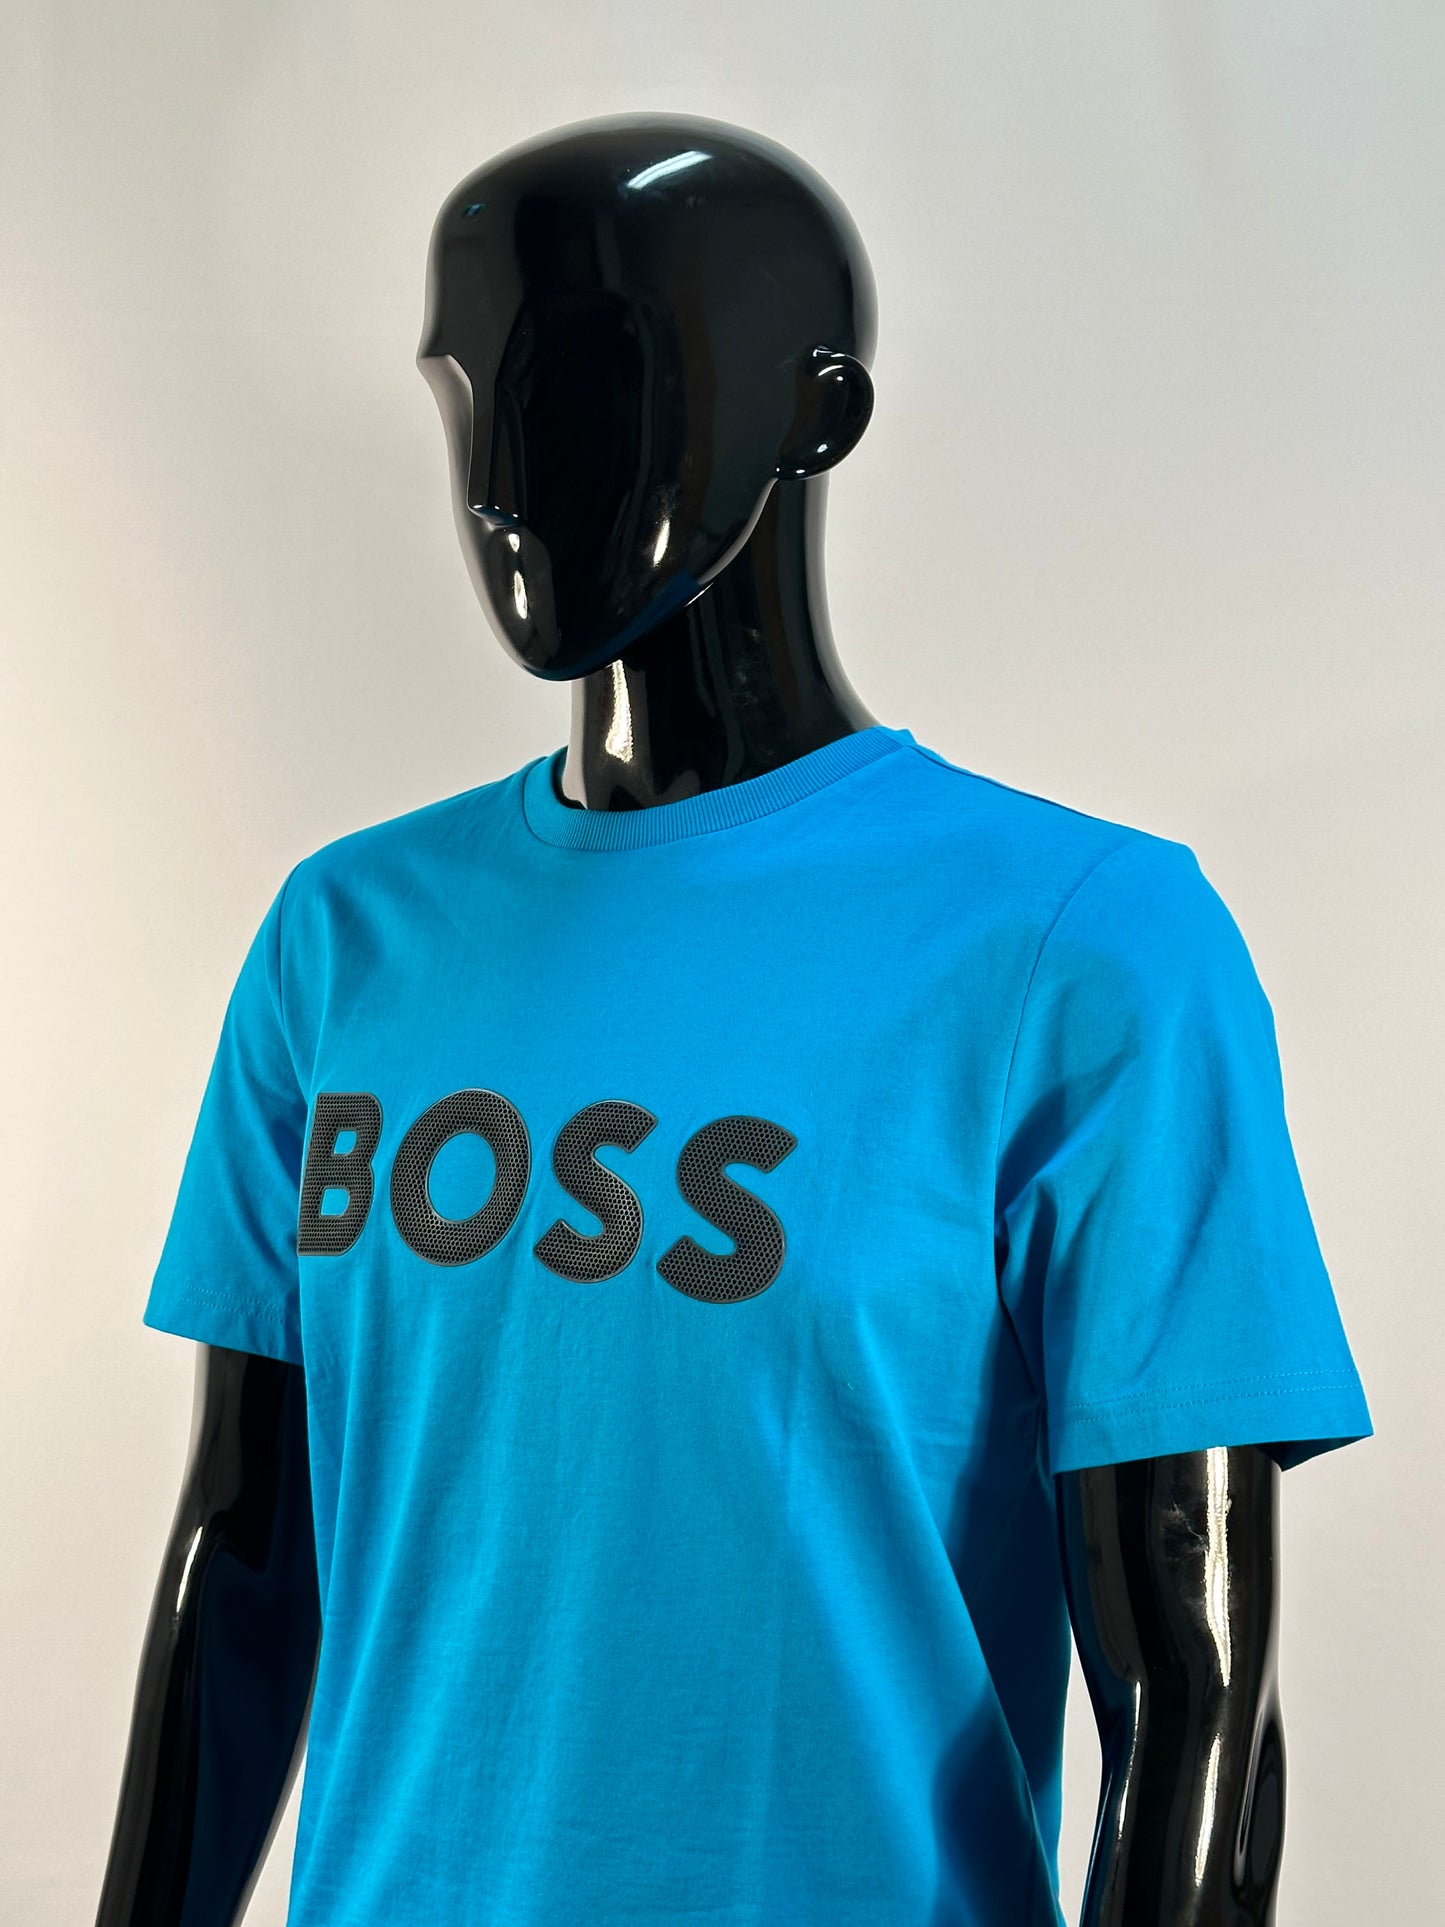 Boss Athleisure Men's T-Shirt